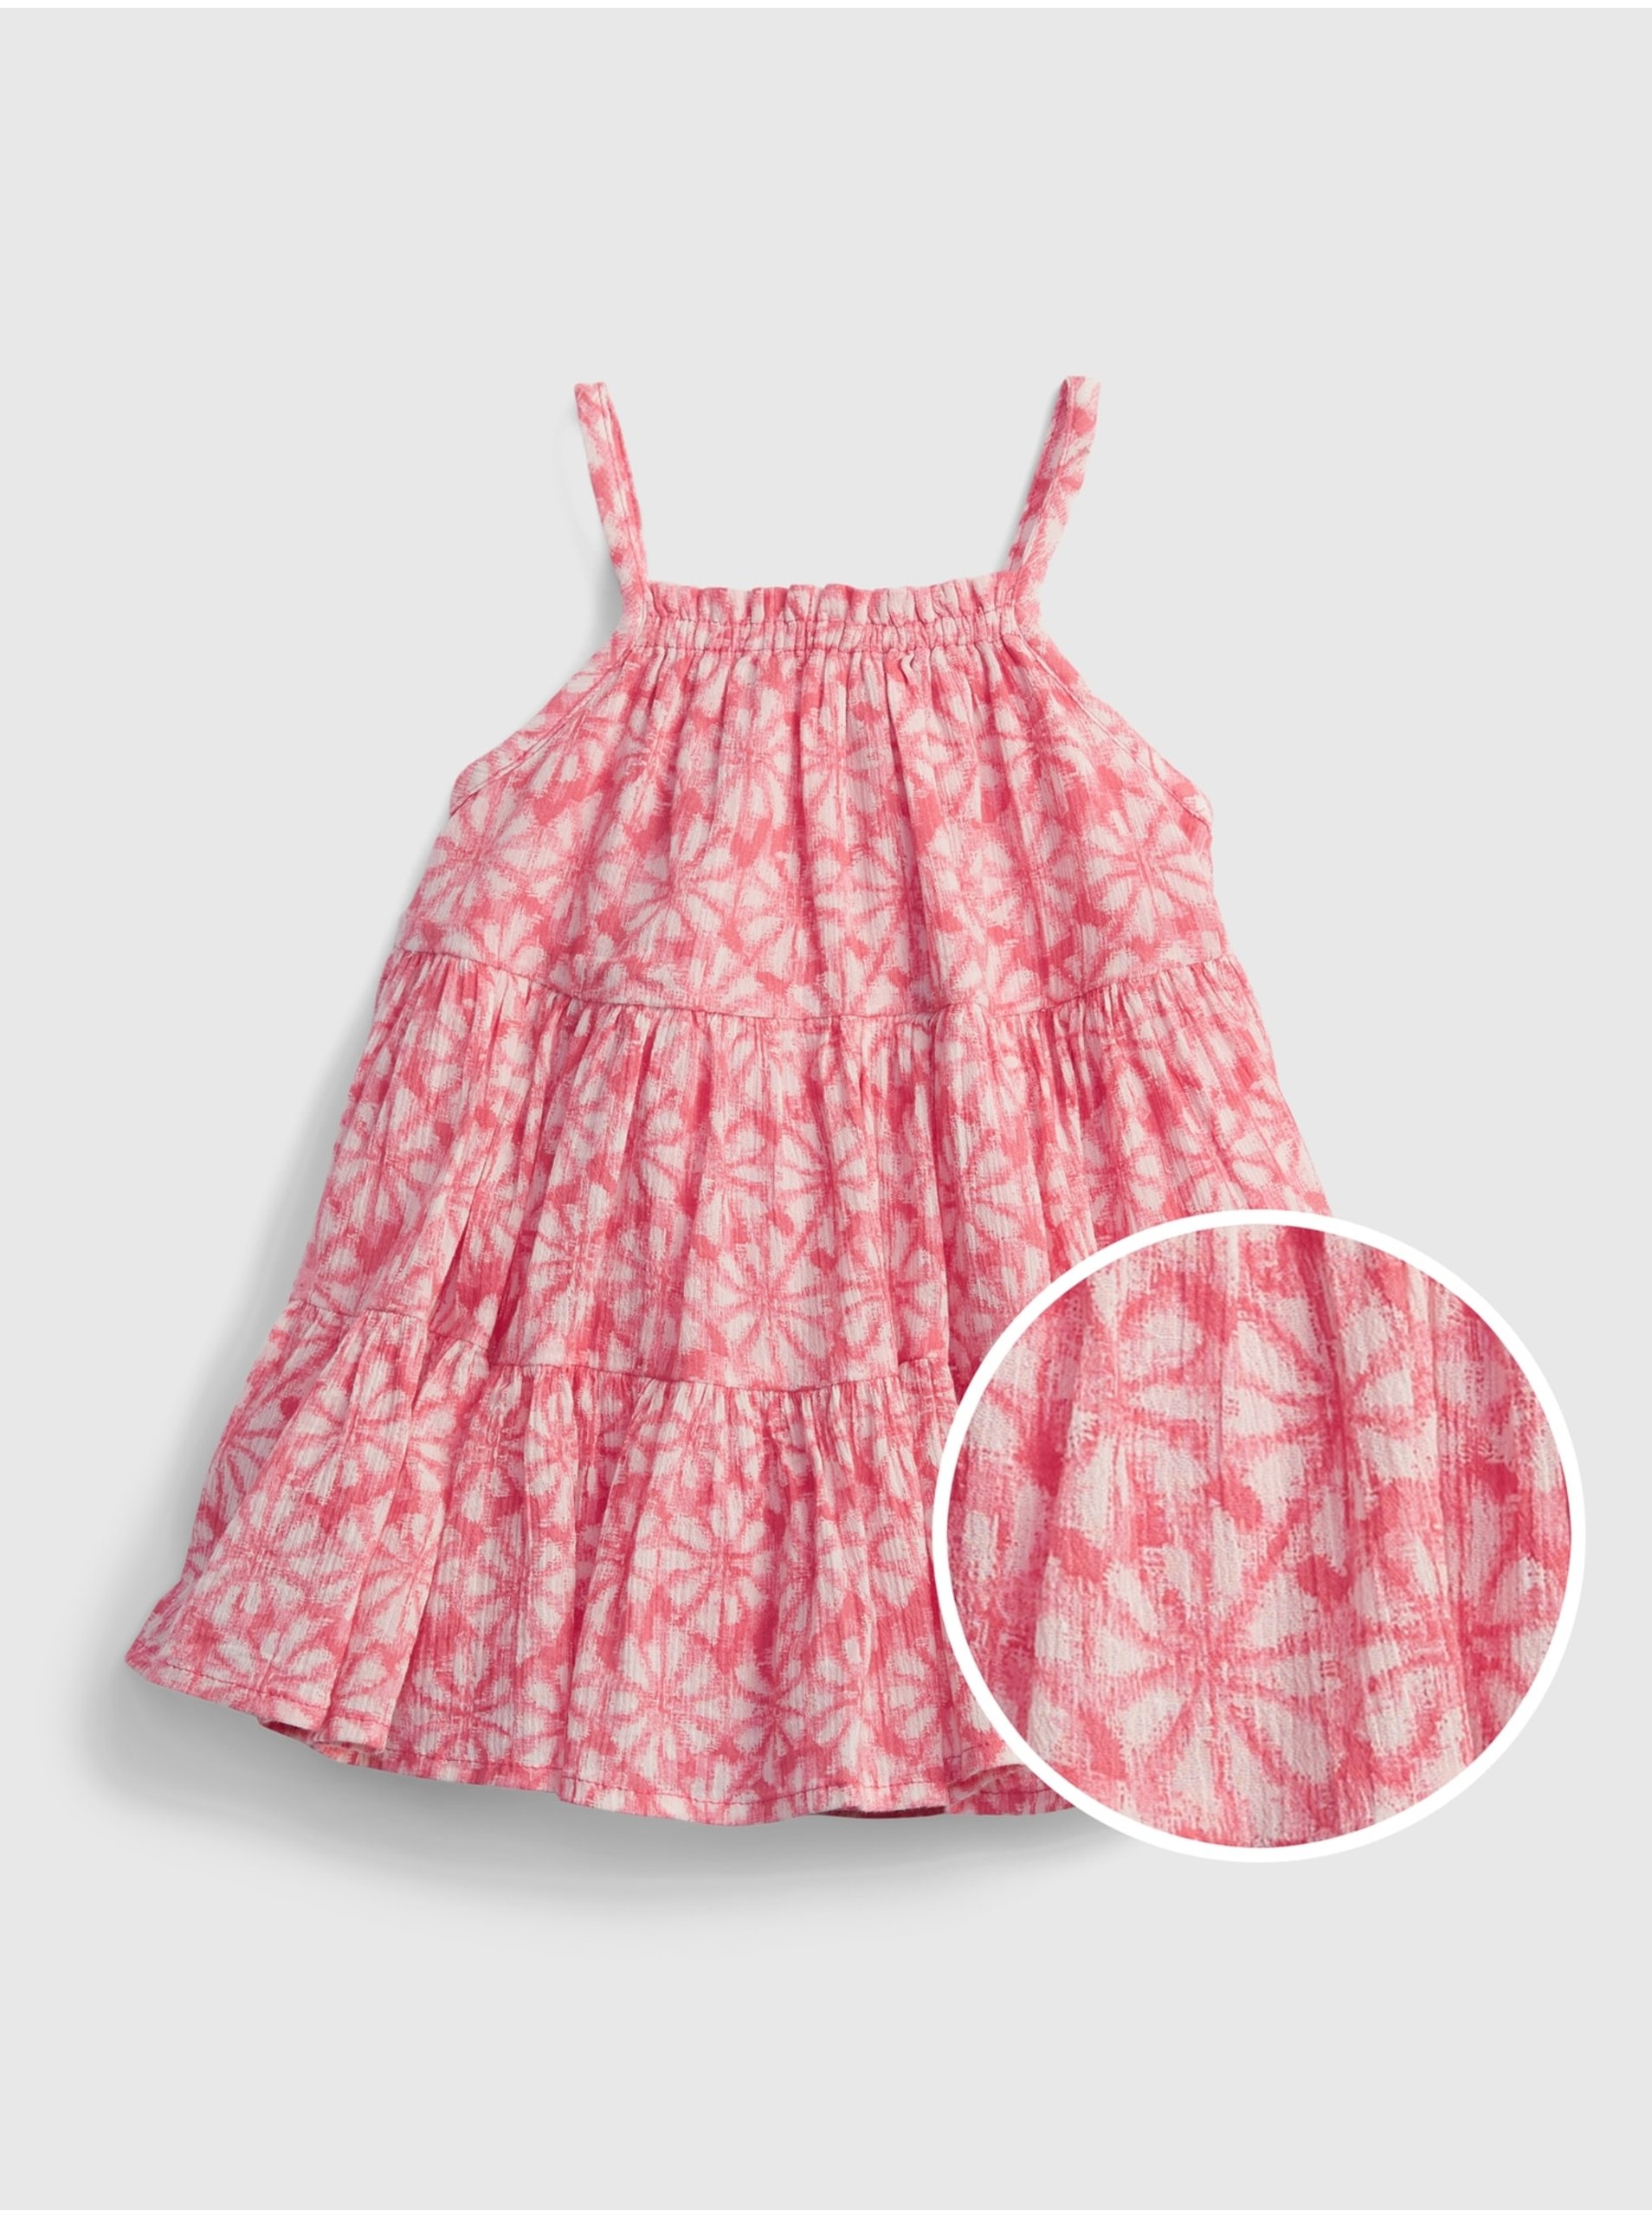 E-shop Červené holčičí baby šaty gauze tiered floral dress